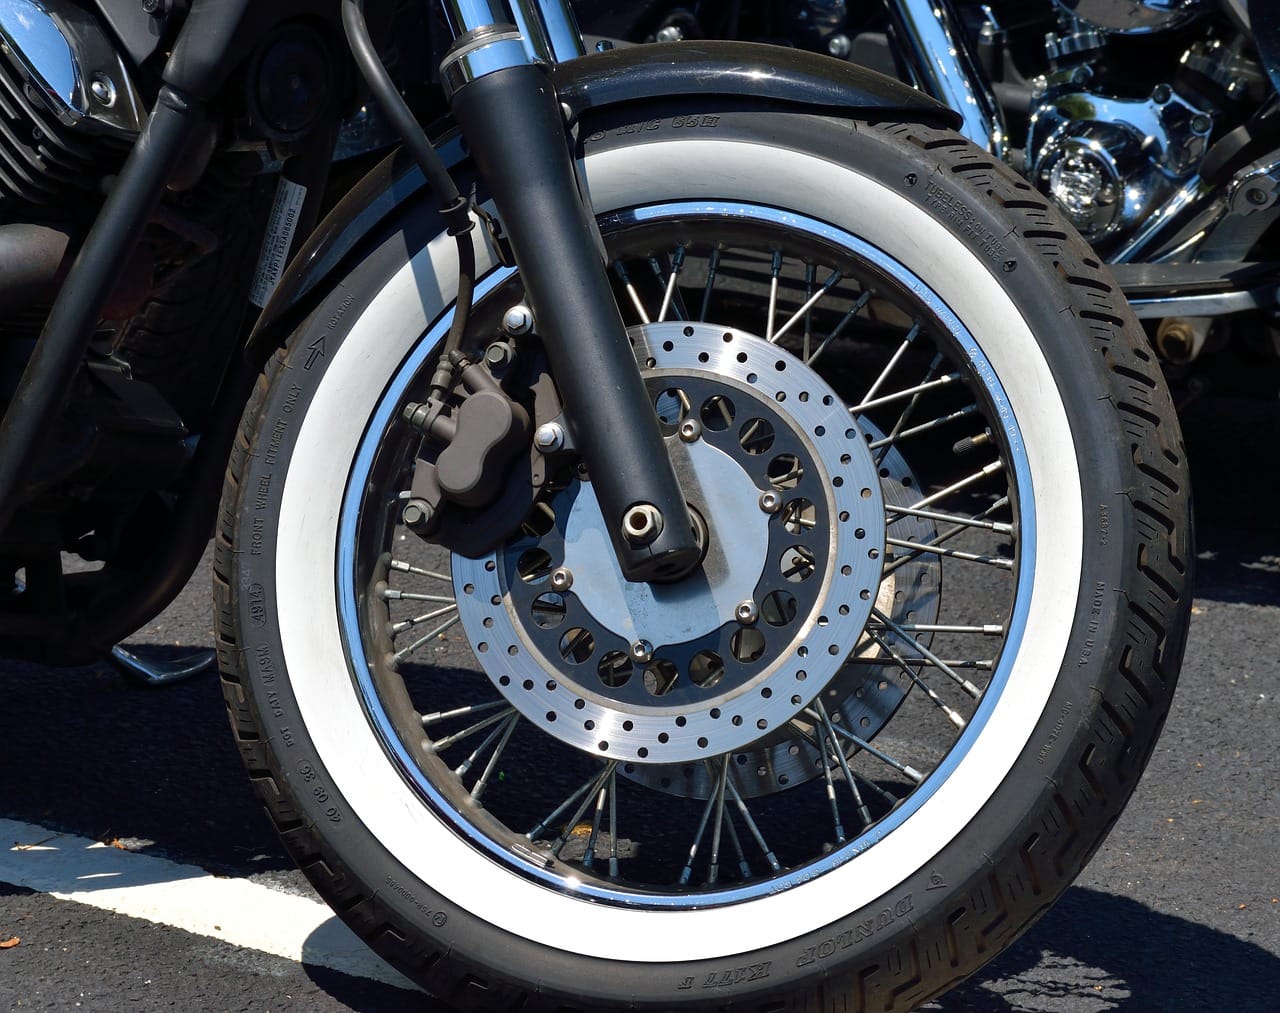 A motorbike wheel